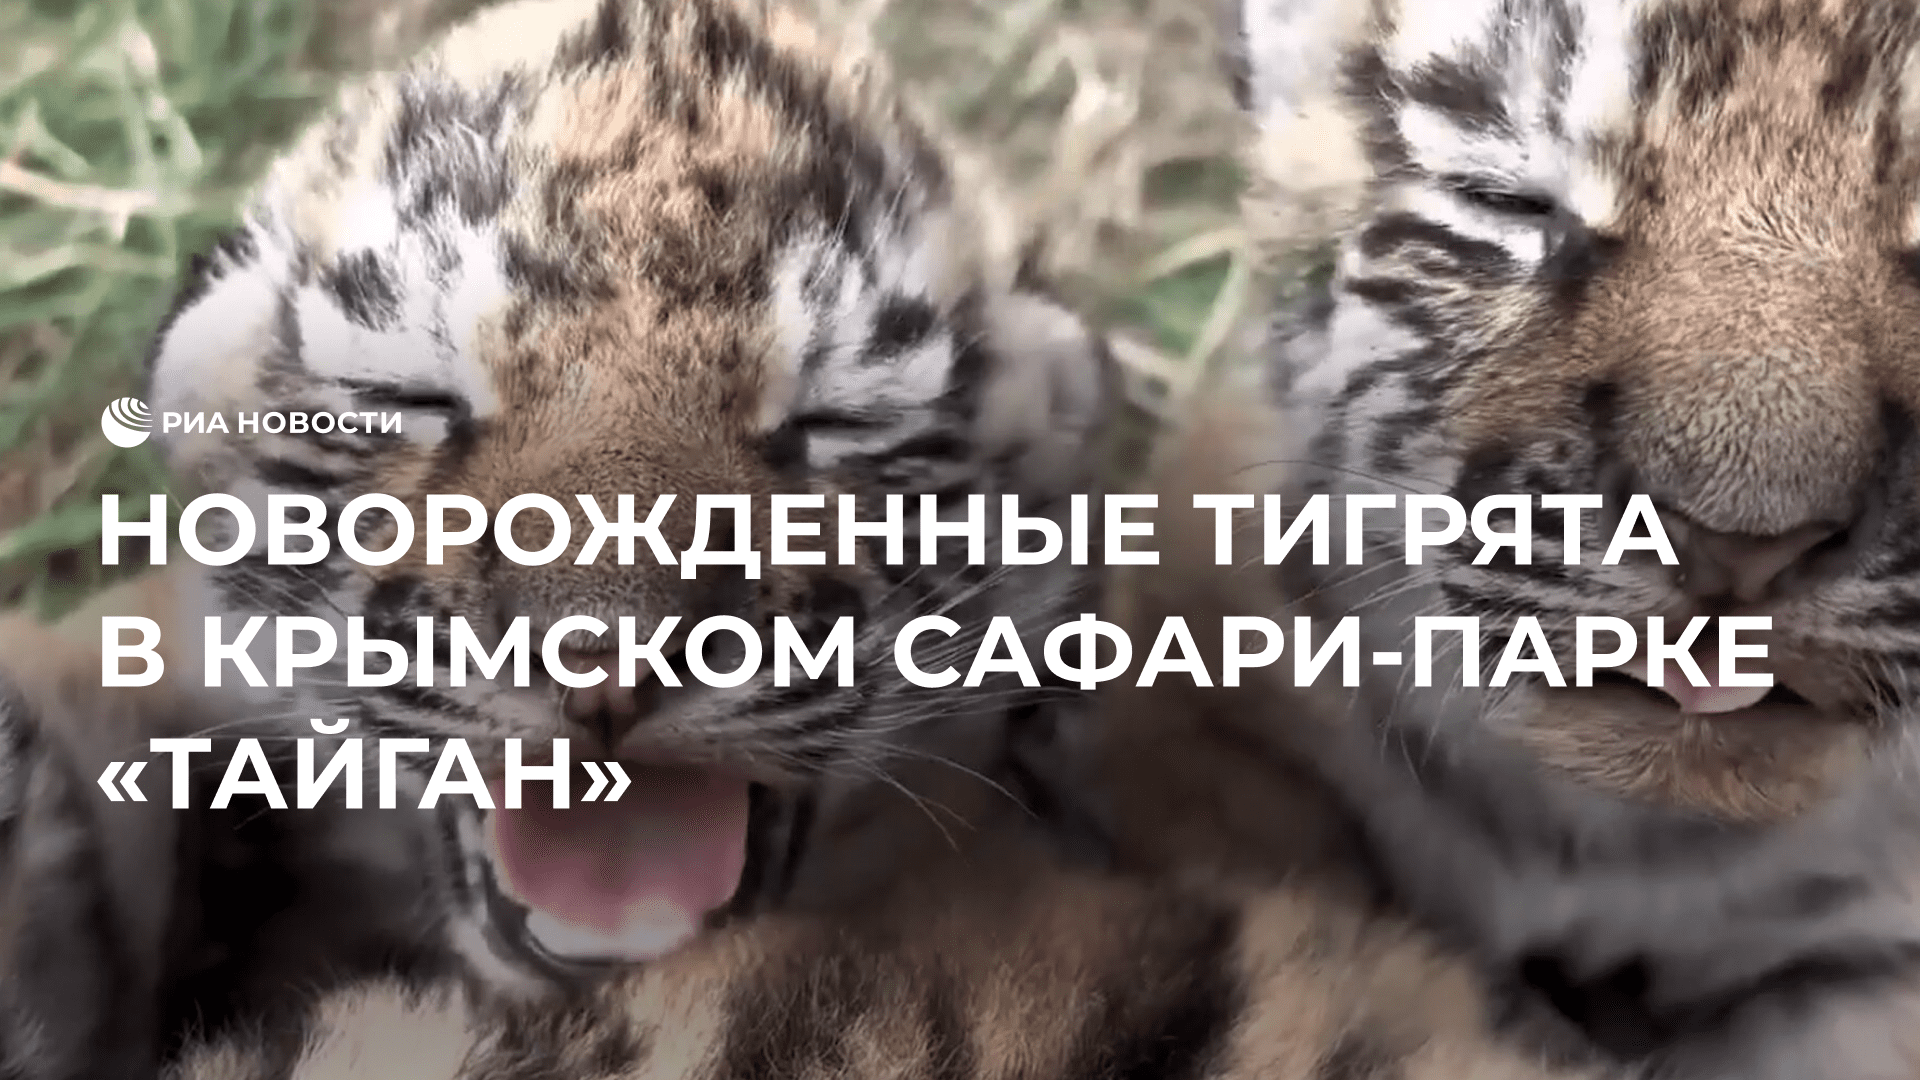 Новорожденные тигрята в крымском сафари-парке "Тайган"